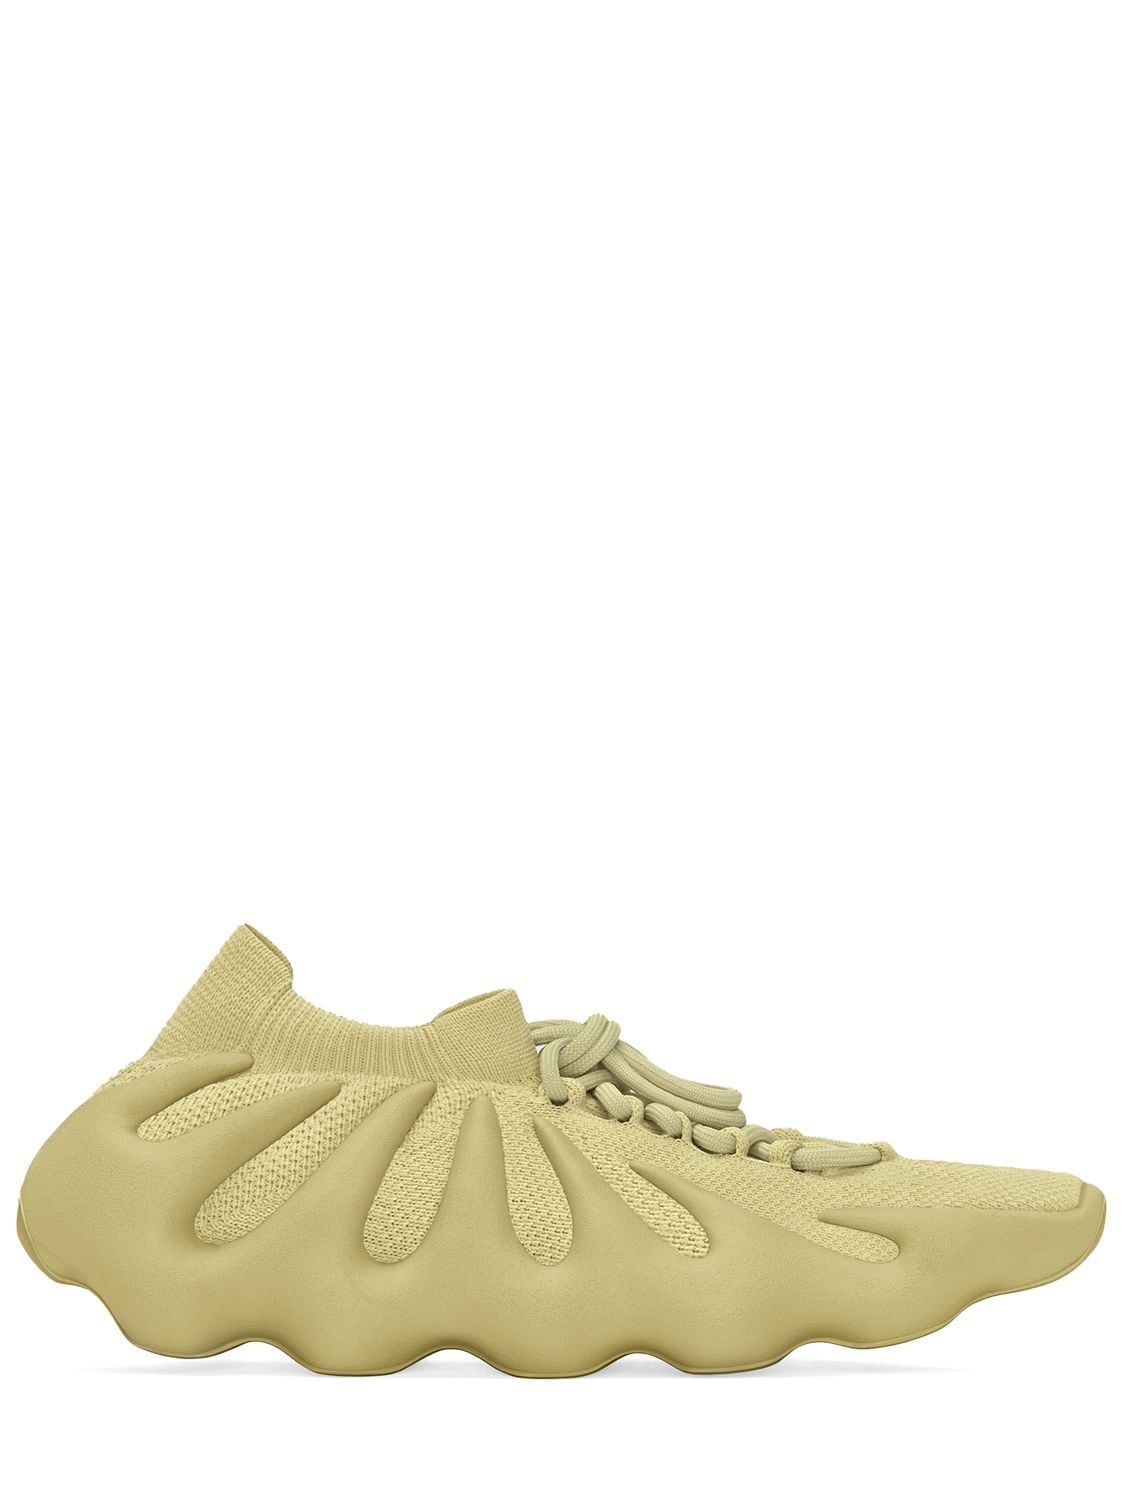 Yeezy 450 Sneakers In Yellow